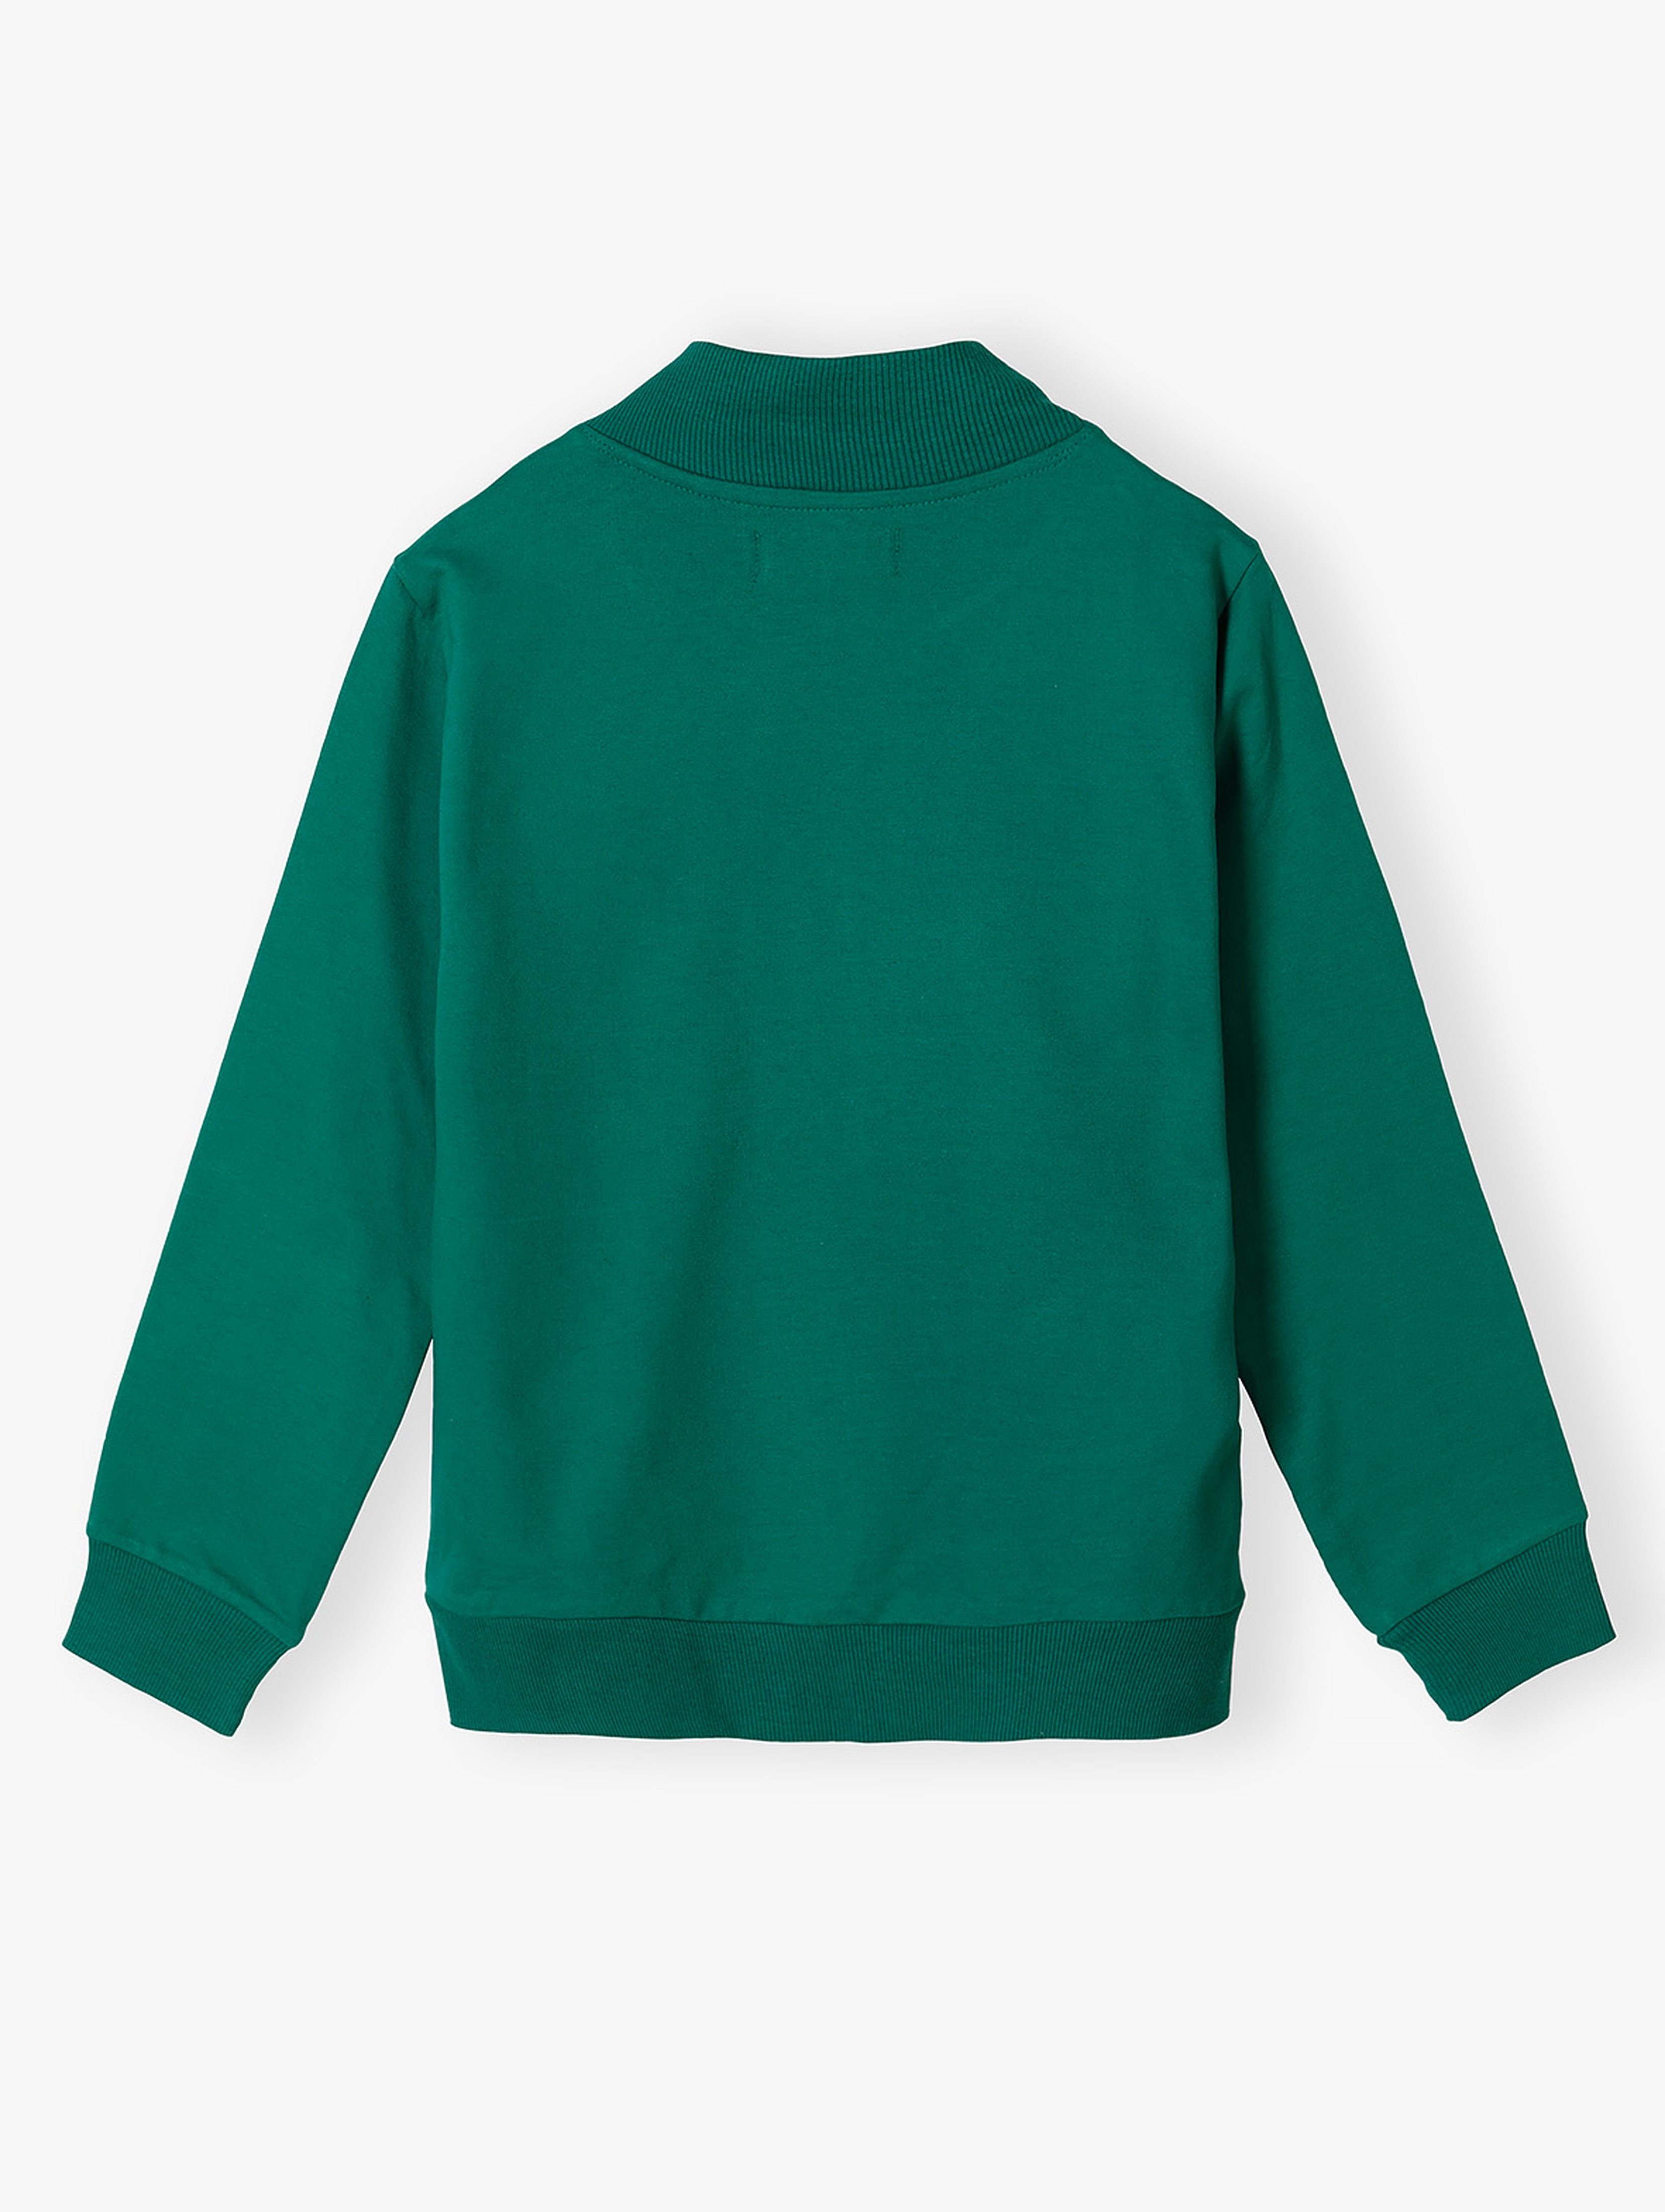 Bluza chłopięca bawełniana rozpinana zielona